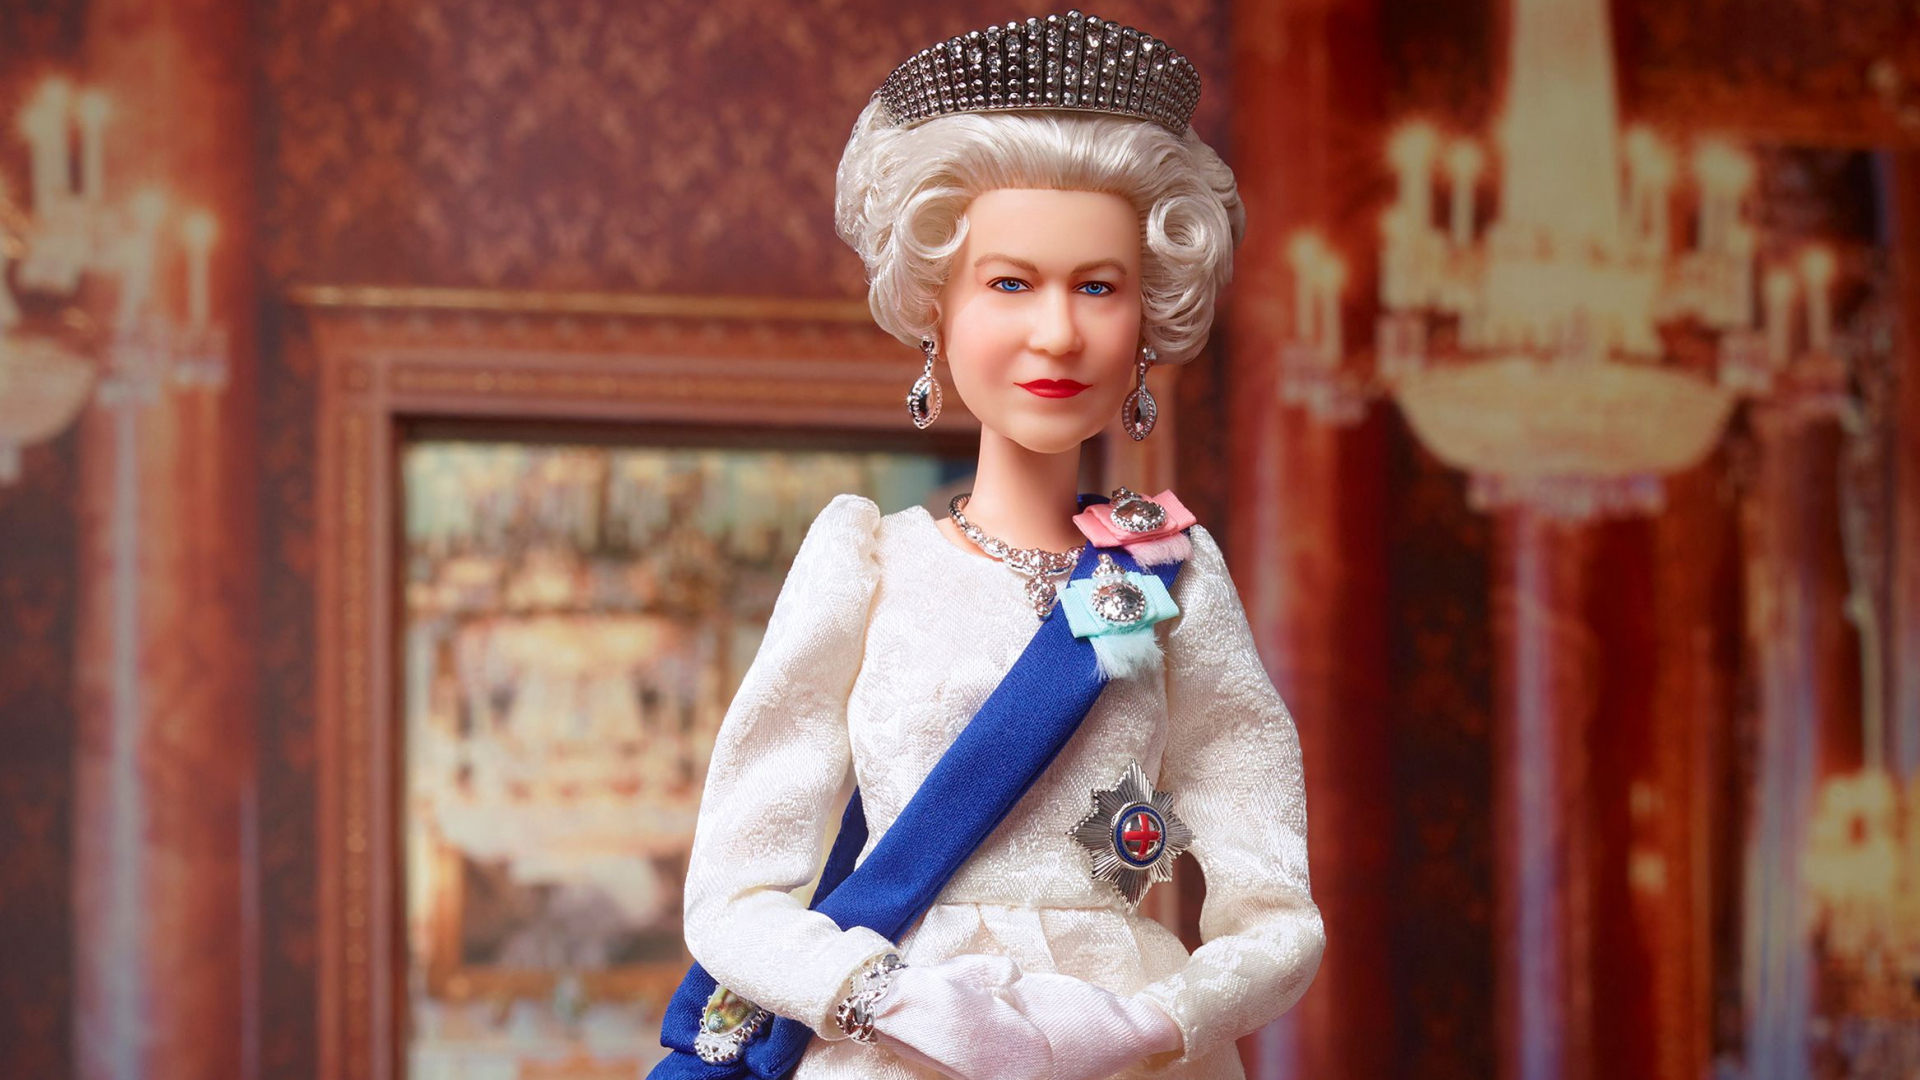 Queen-Barbiepuppe der Firma Mattel | AFP